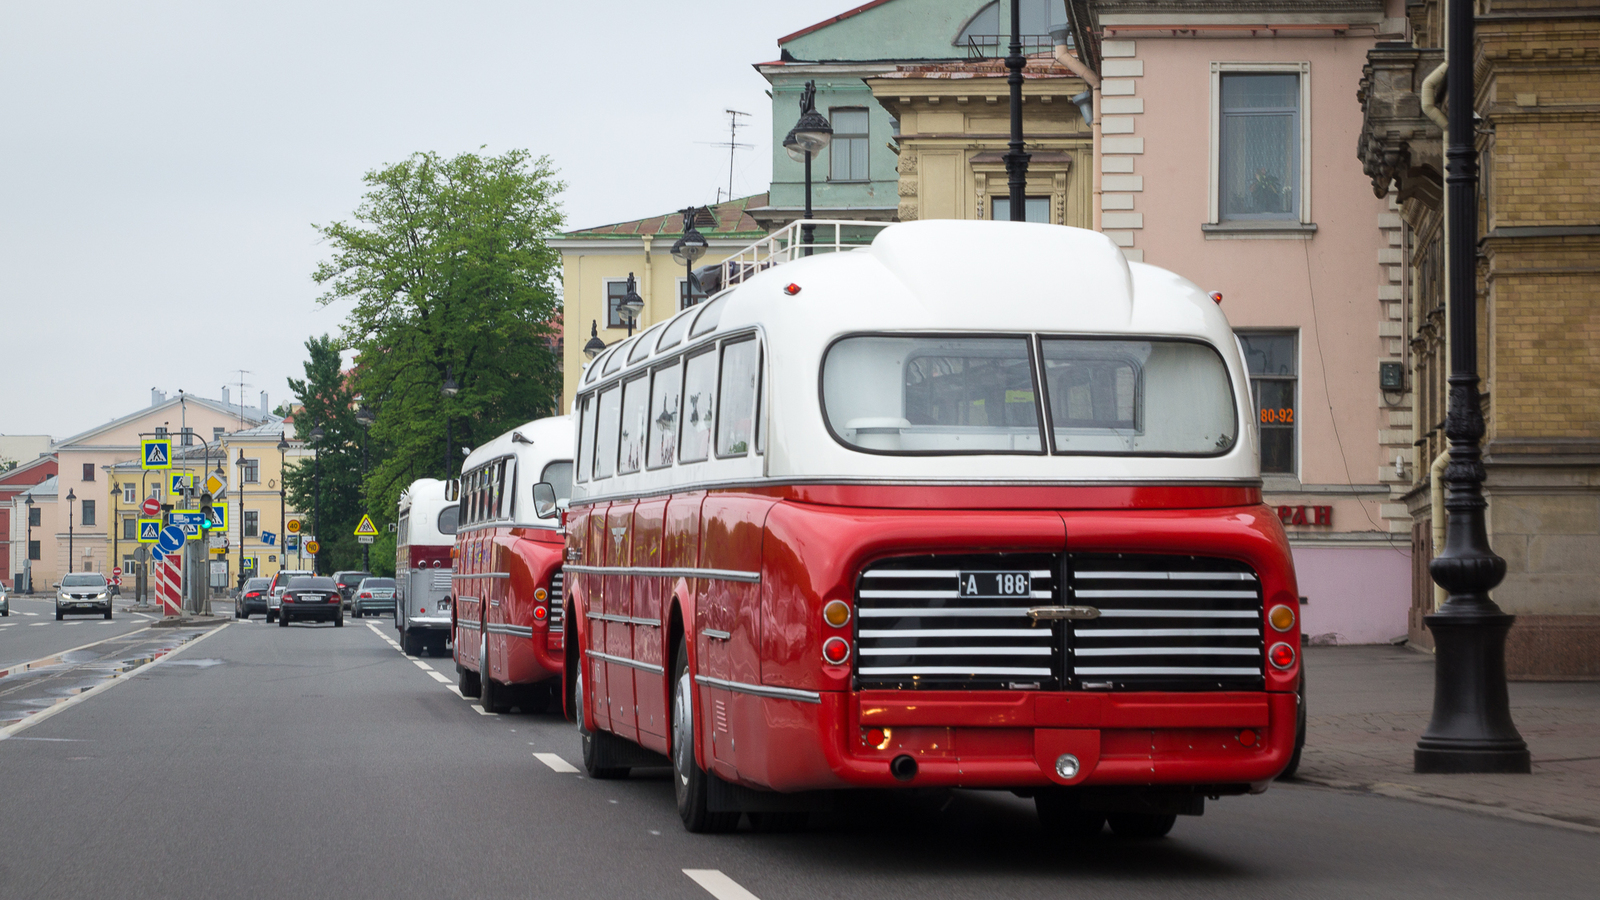 Автобусы 60 х годов фото ссср